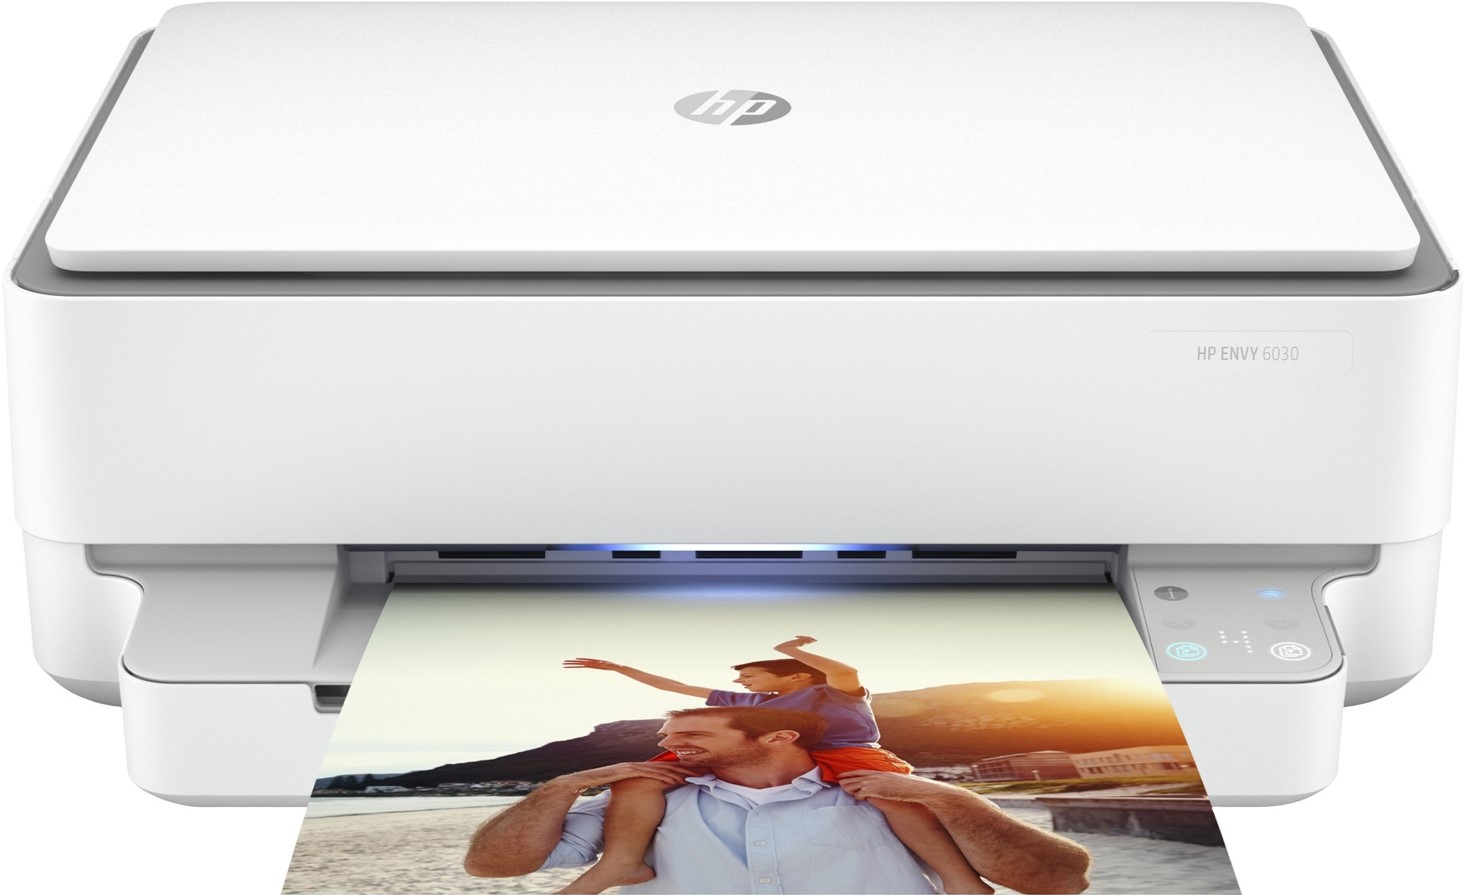 En vit HP Envy skrivare visas upp mot en vit bakgrund med en utskriven bild i utskriftsfacket.